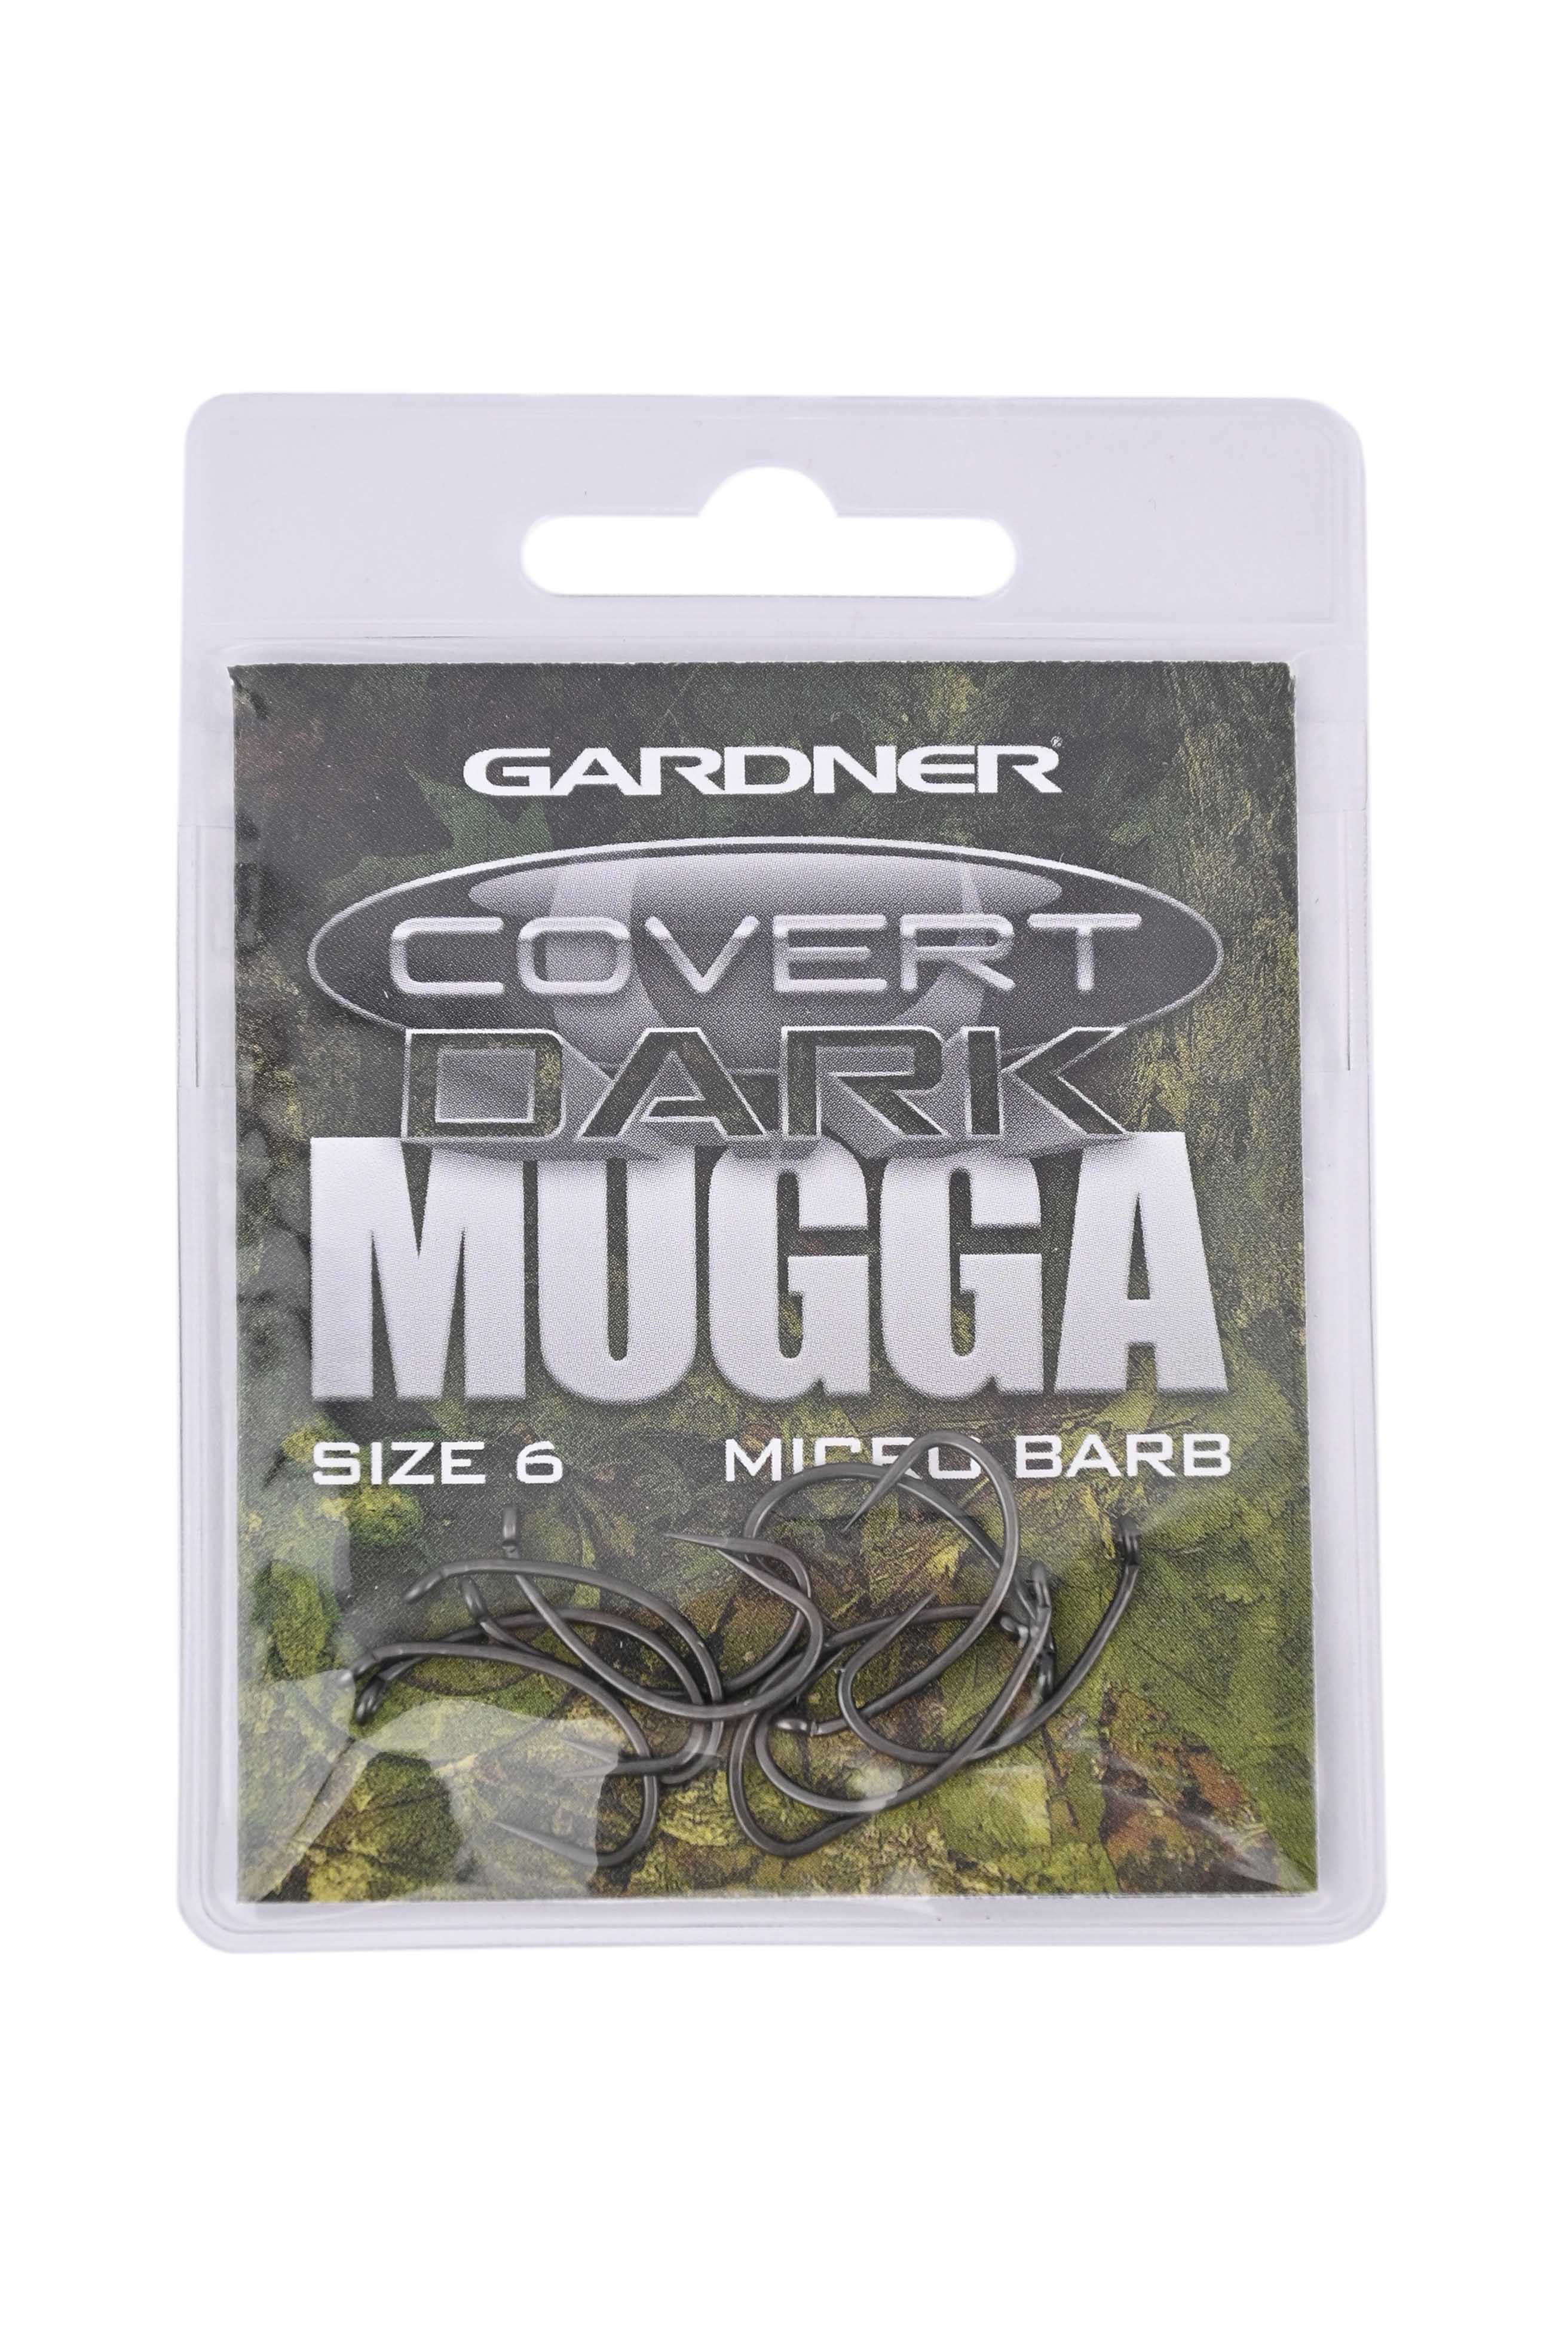 Крючки Gardner Covert dark mugga barbed №6